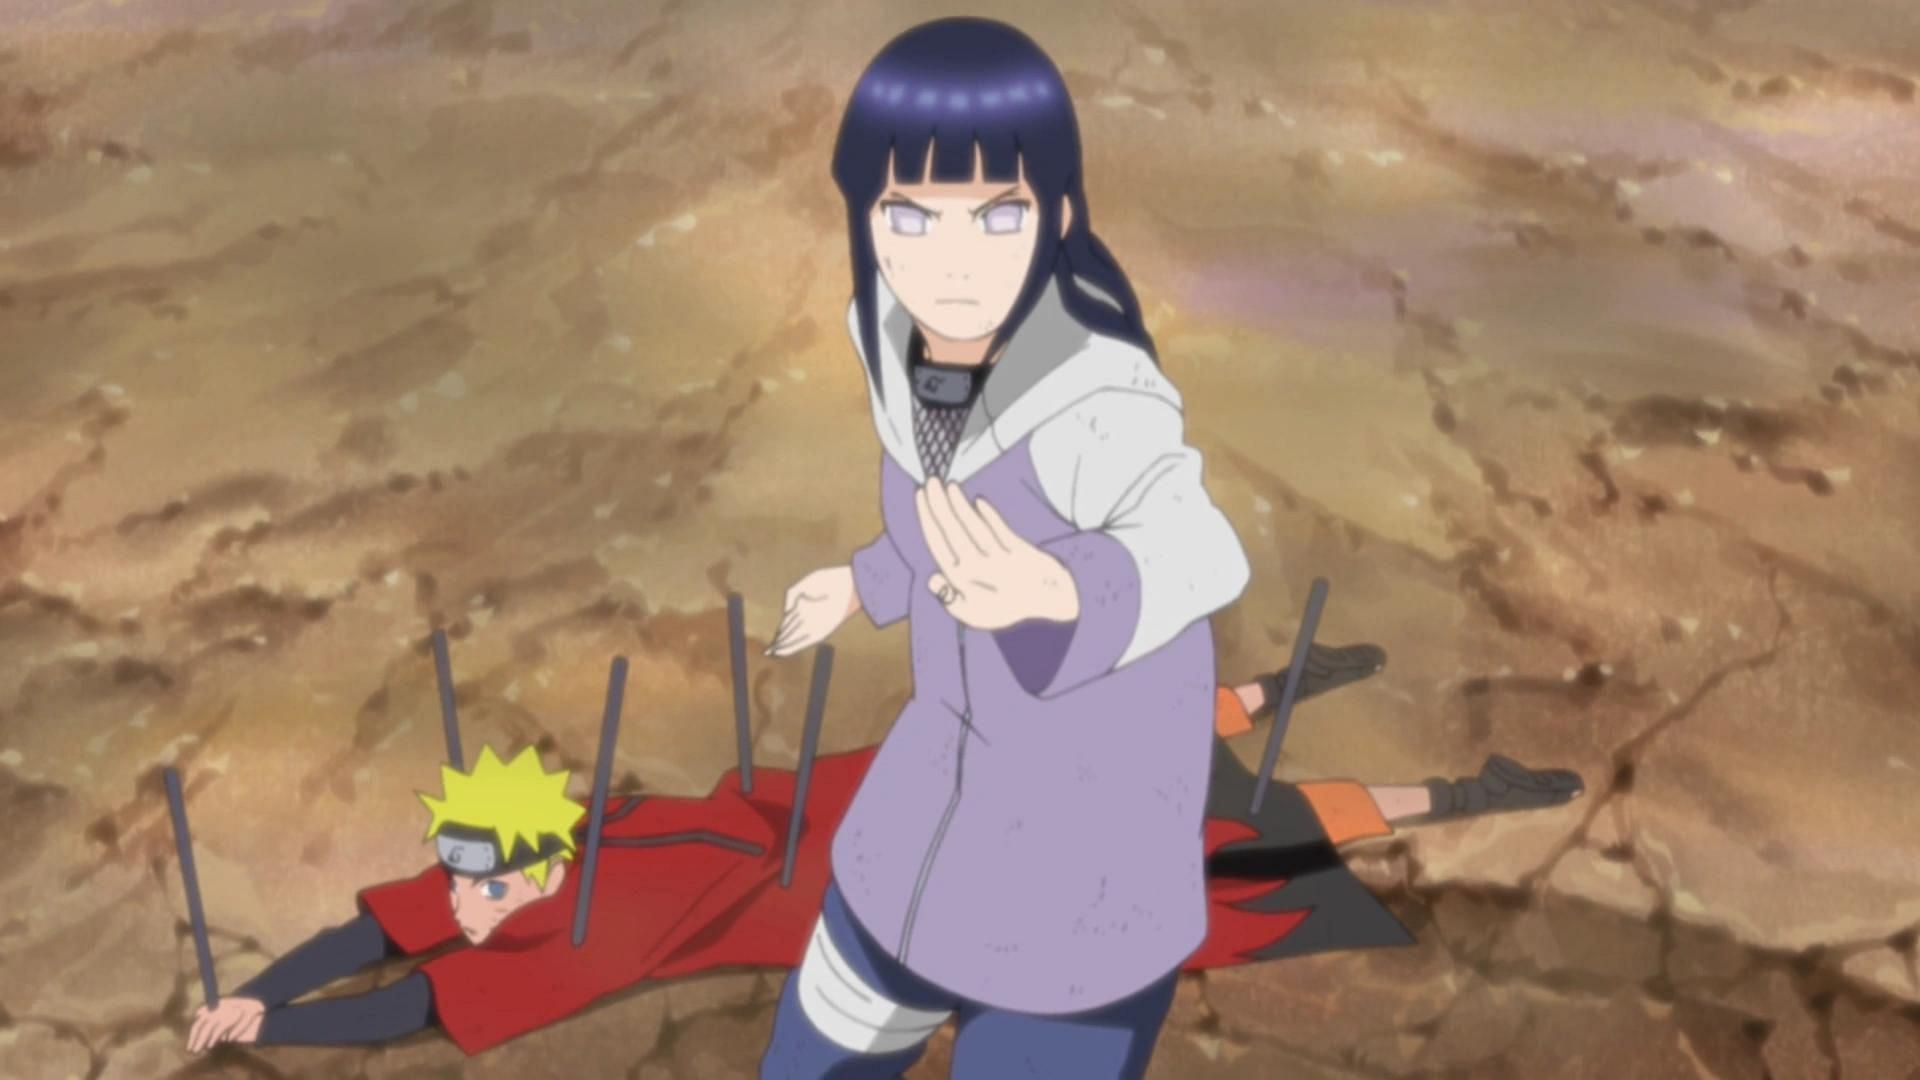 Hinata and Naruto as seen in Naruto Shippuden (Image via Studio Pierrot)